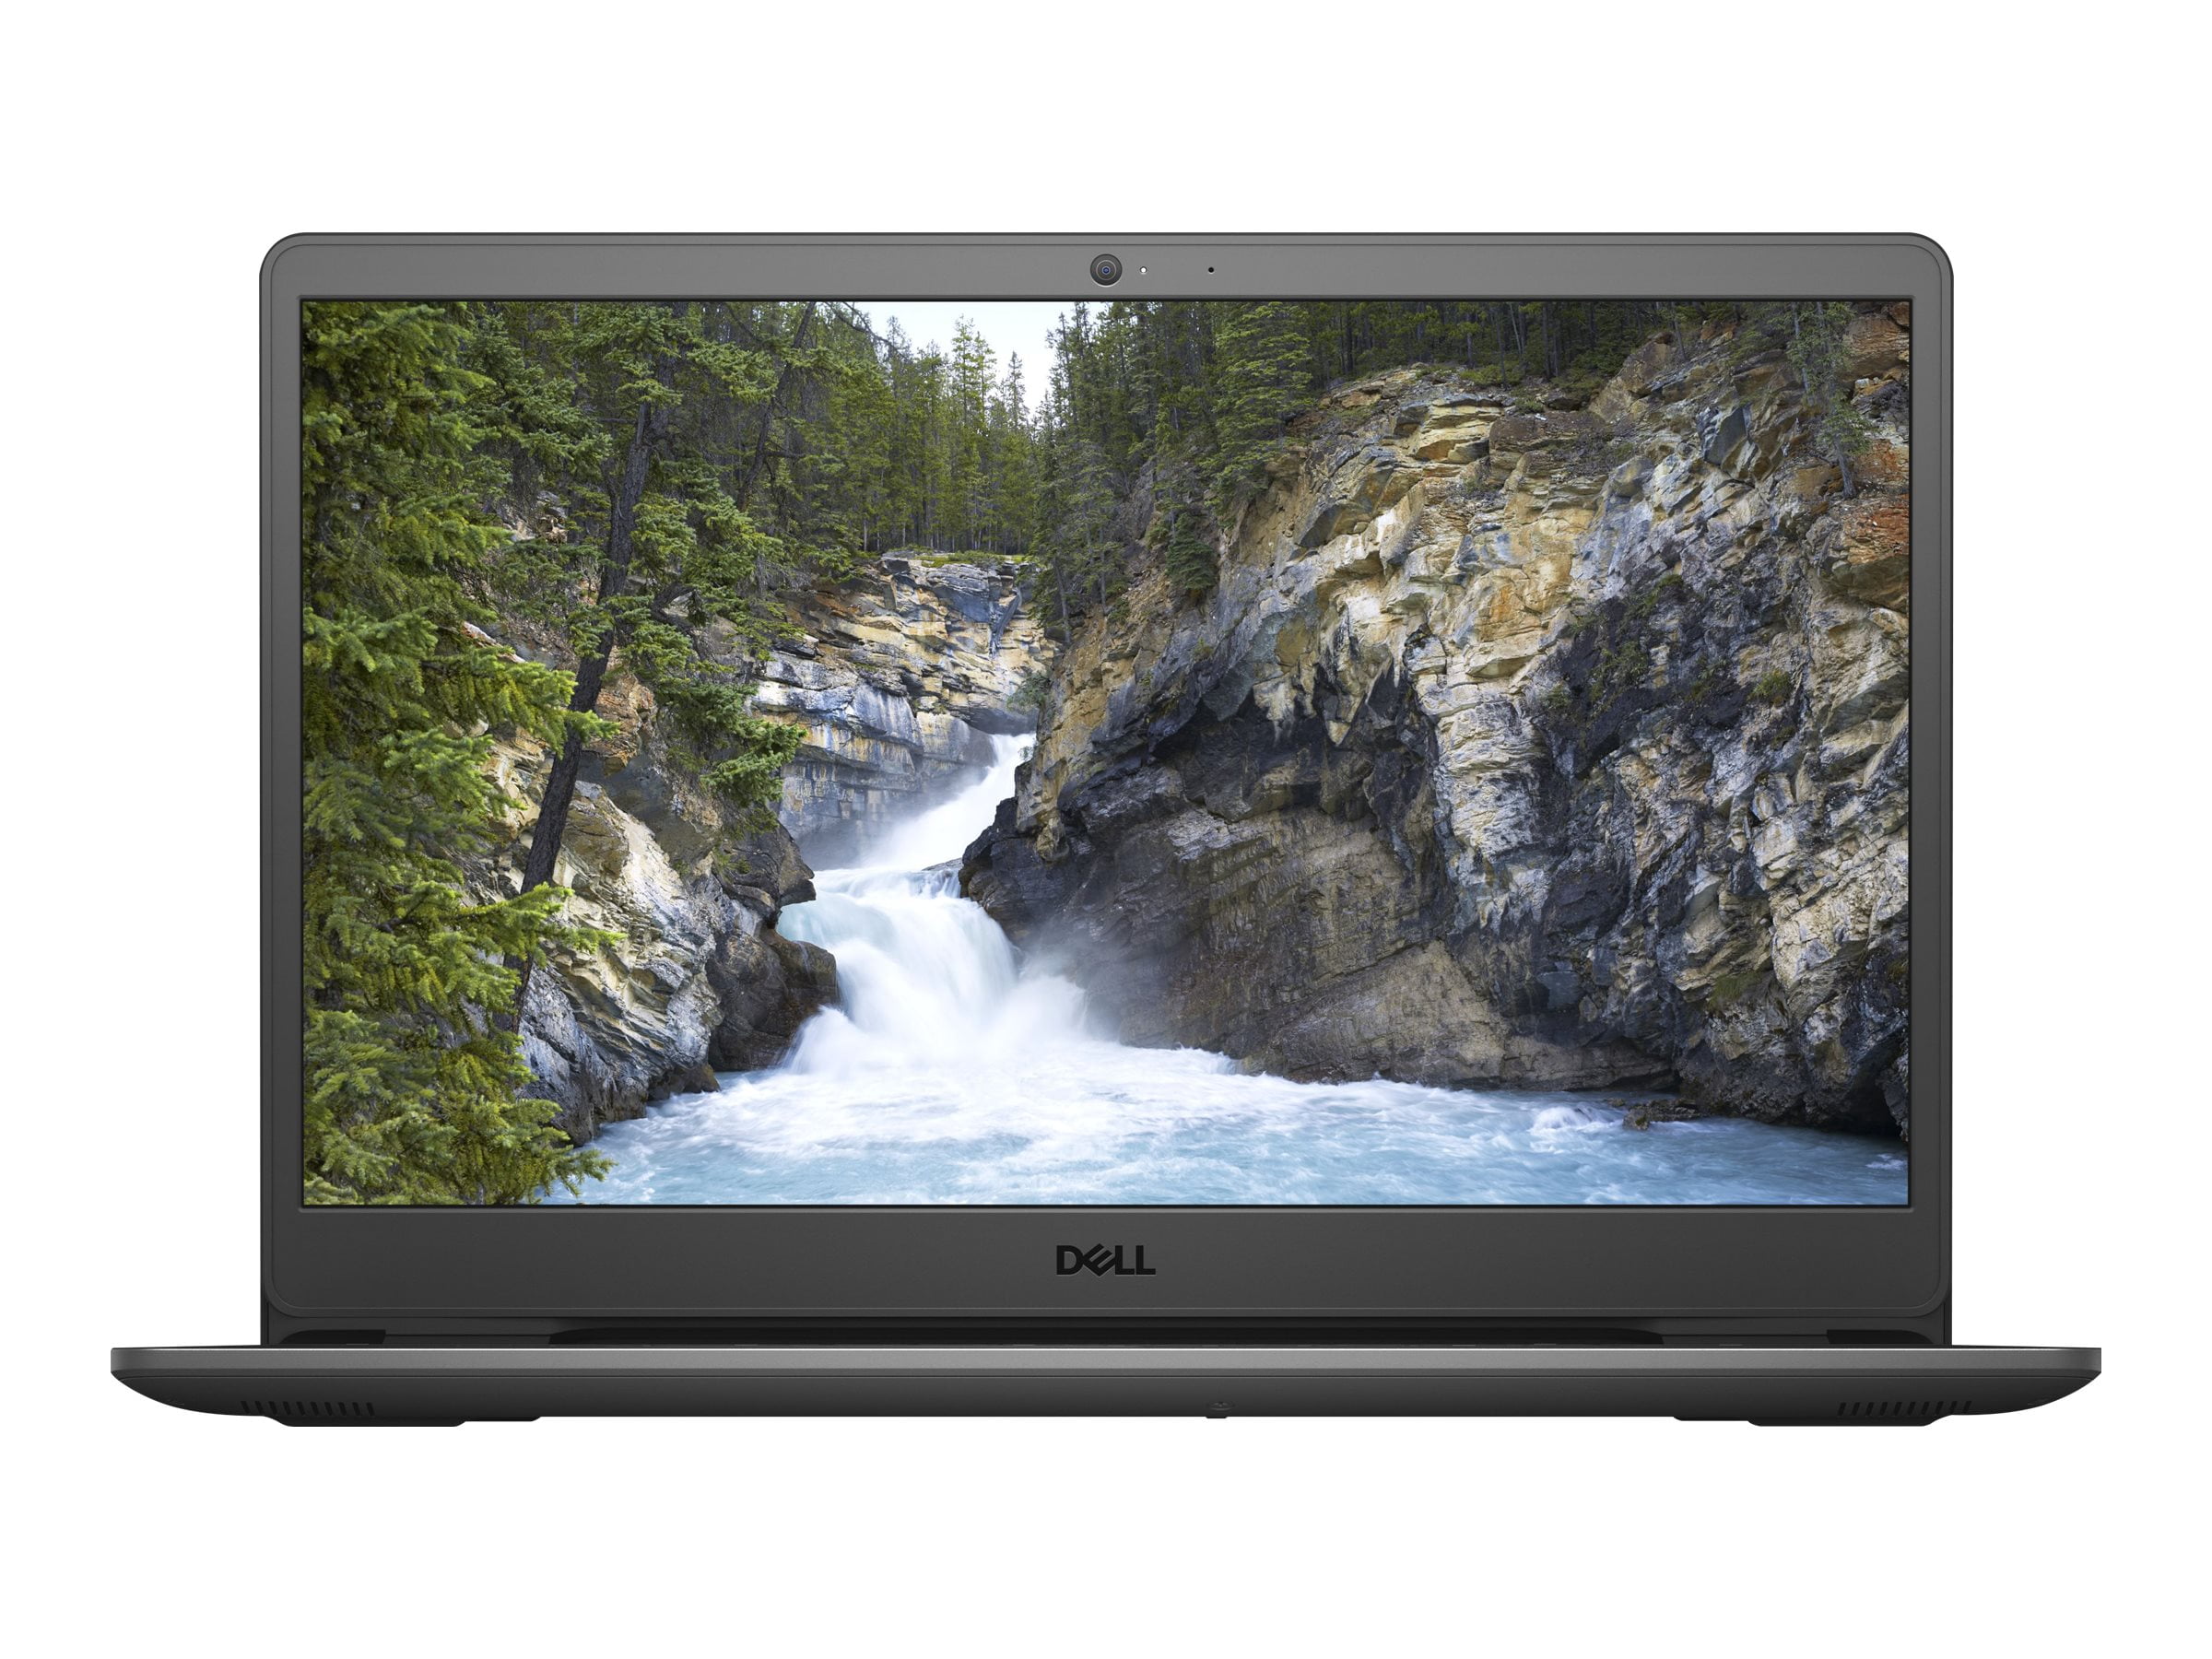 Dell Inspiron 3501 - Intel Core i5 1135G7 - Windows 10 Home 64-bit